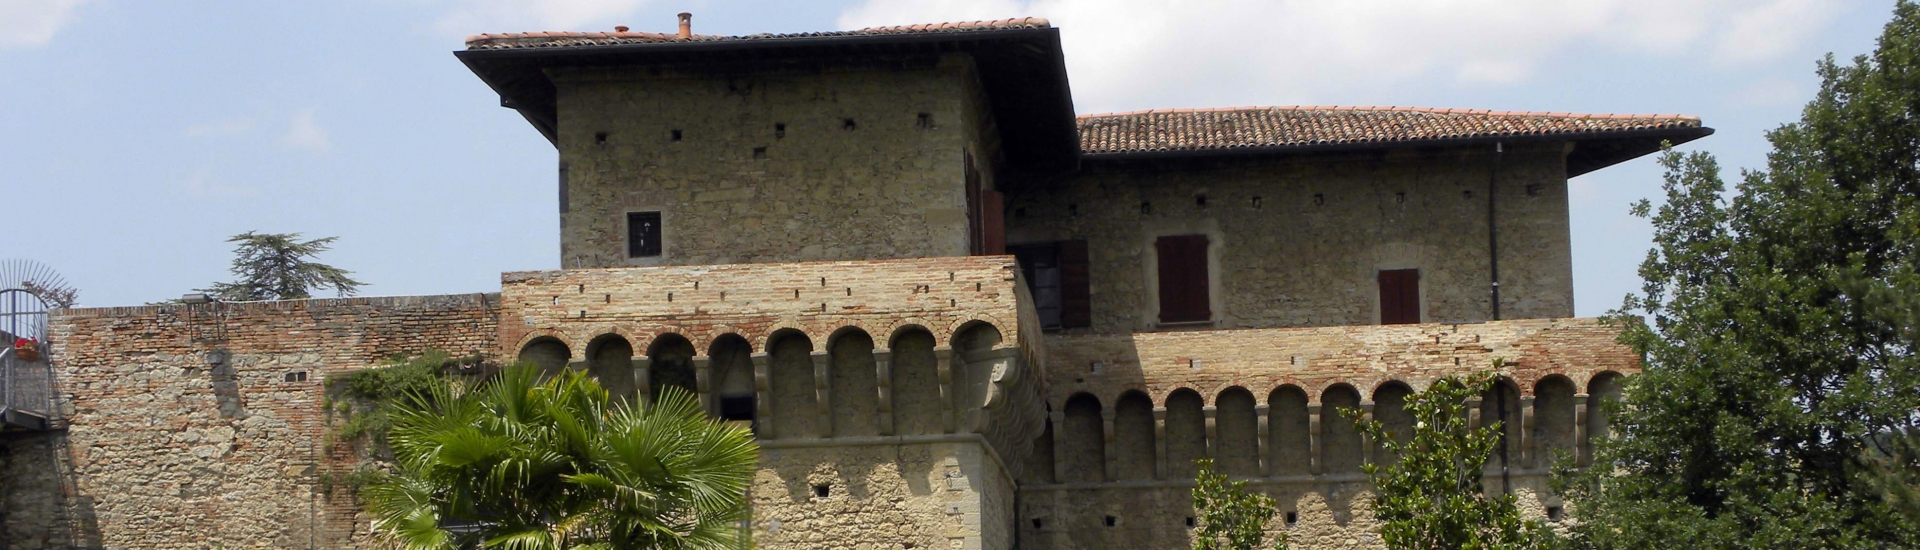 Castello del Capitano delle Artiglierie - Facade of the Castle photo credits: |Personale| - Referente della Struttura